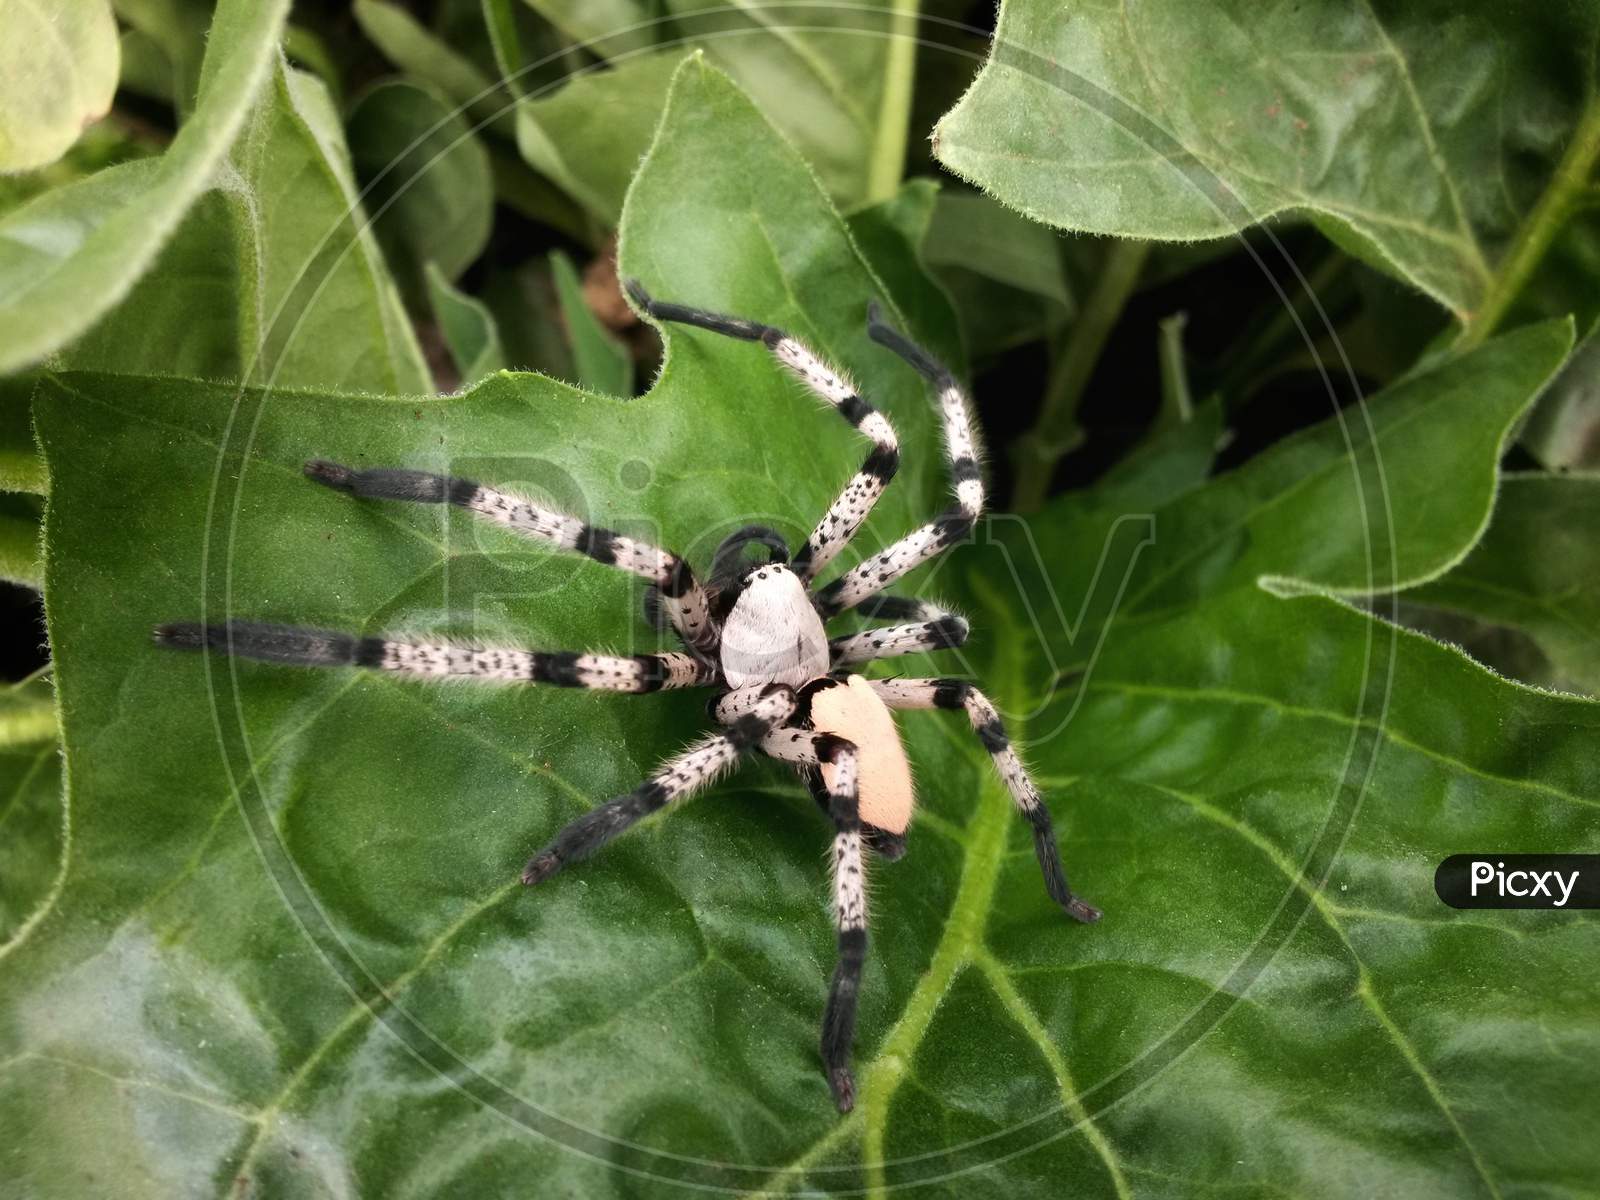 Giant Crab Spider Or Huntsman Spider On Plant